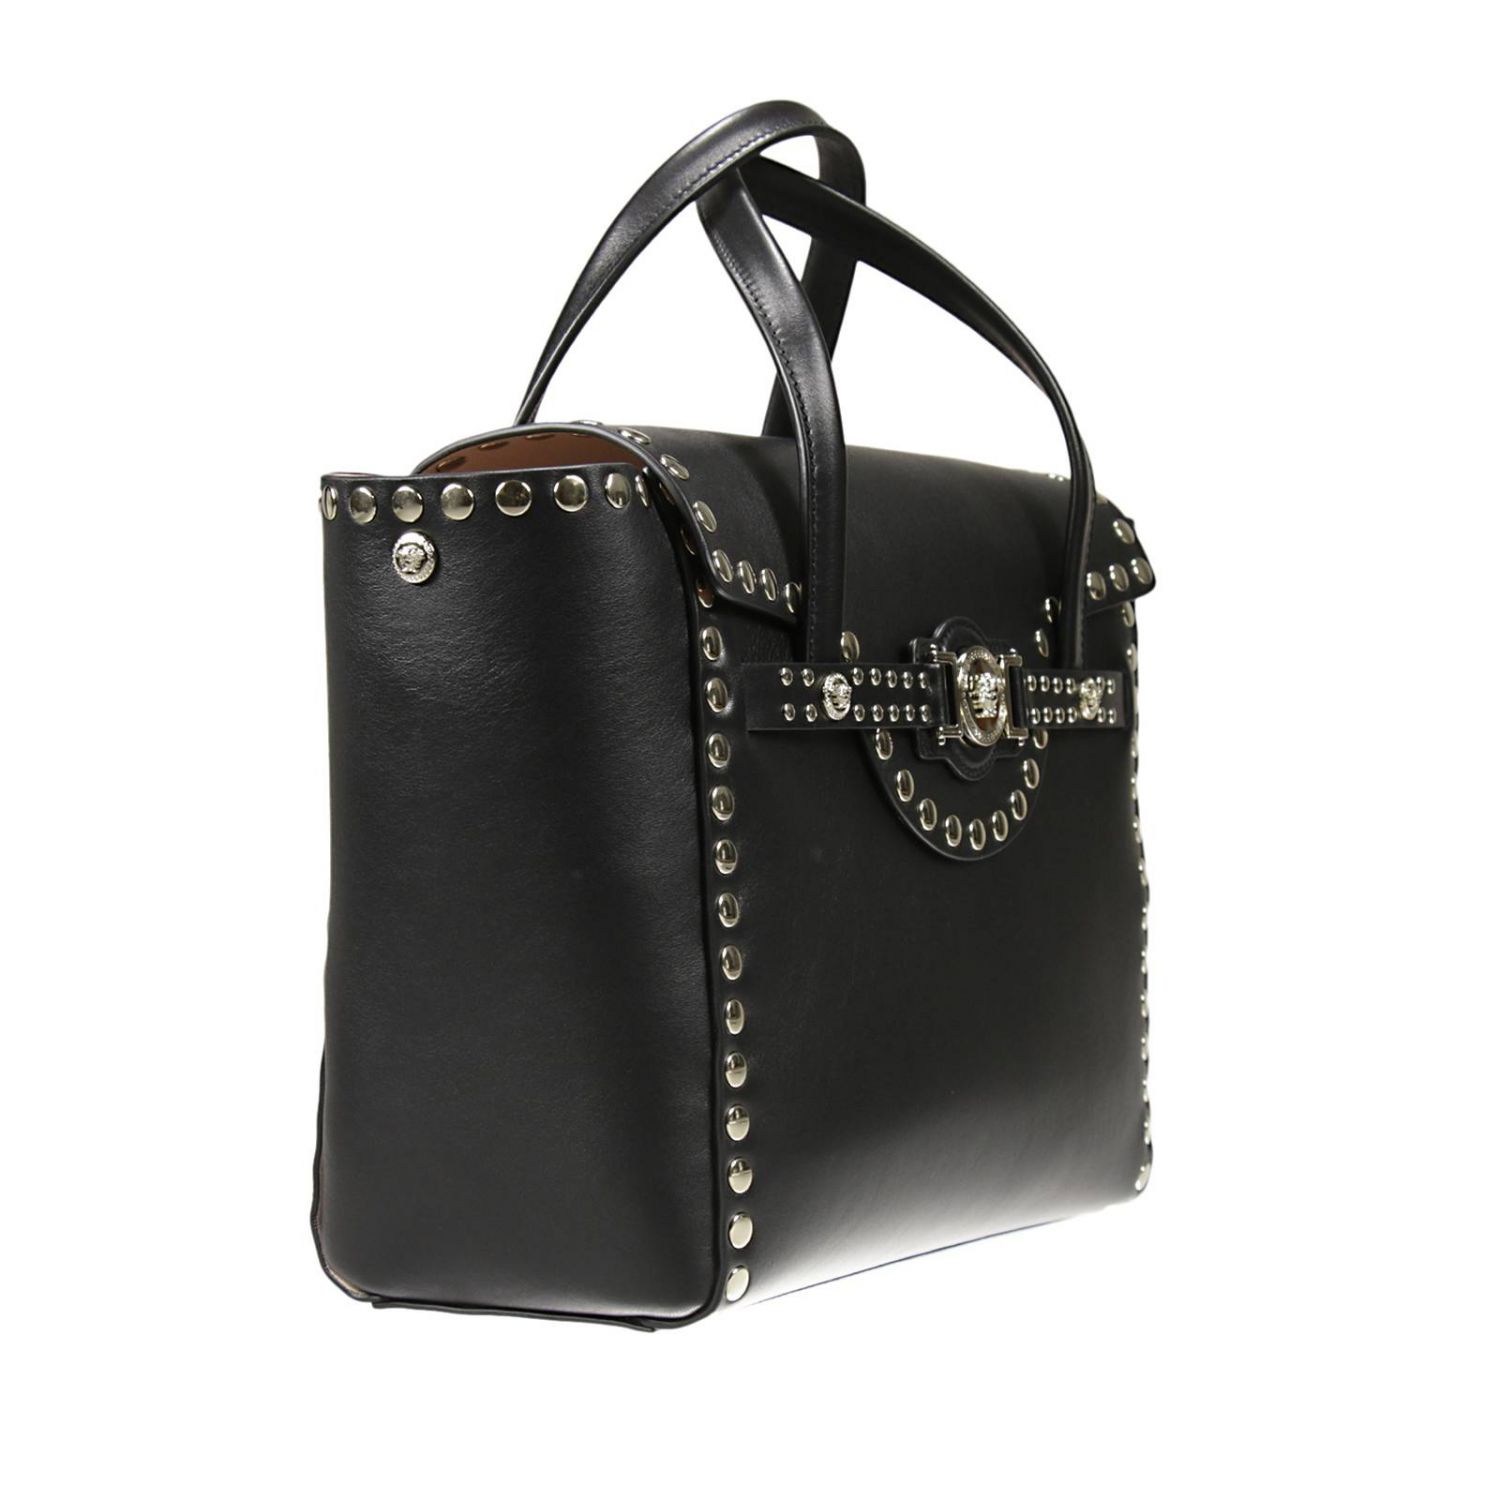 Versace Outlet: | Shoulder Bag Versace Women Black | Shoulder Bag ...